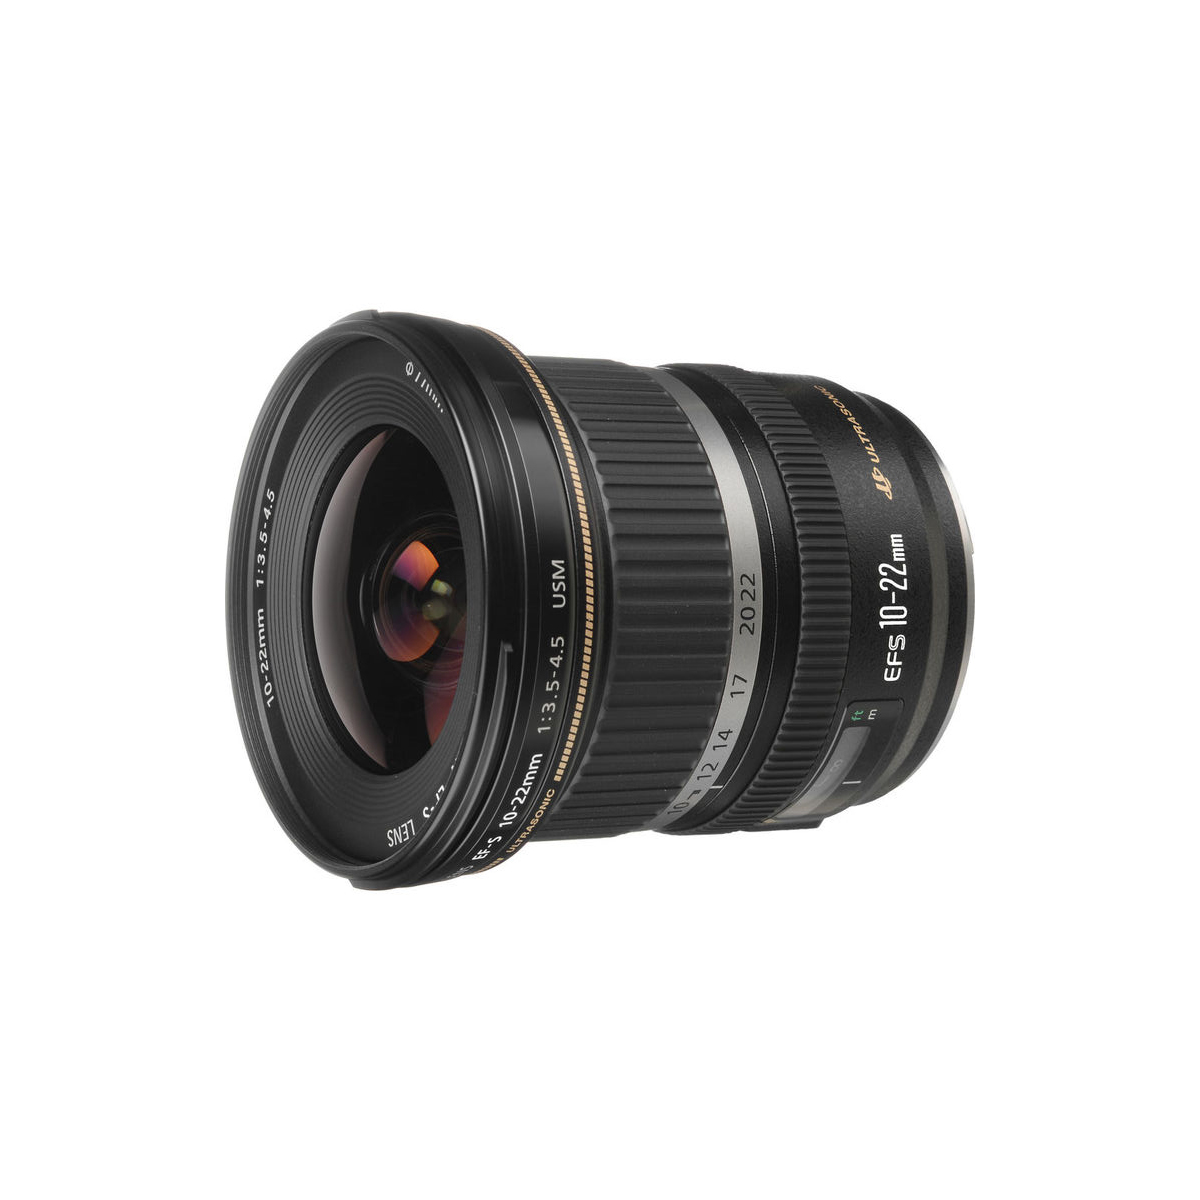 Canon EF-S 10-22mm f/3.5-4.5 USM Lens